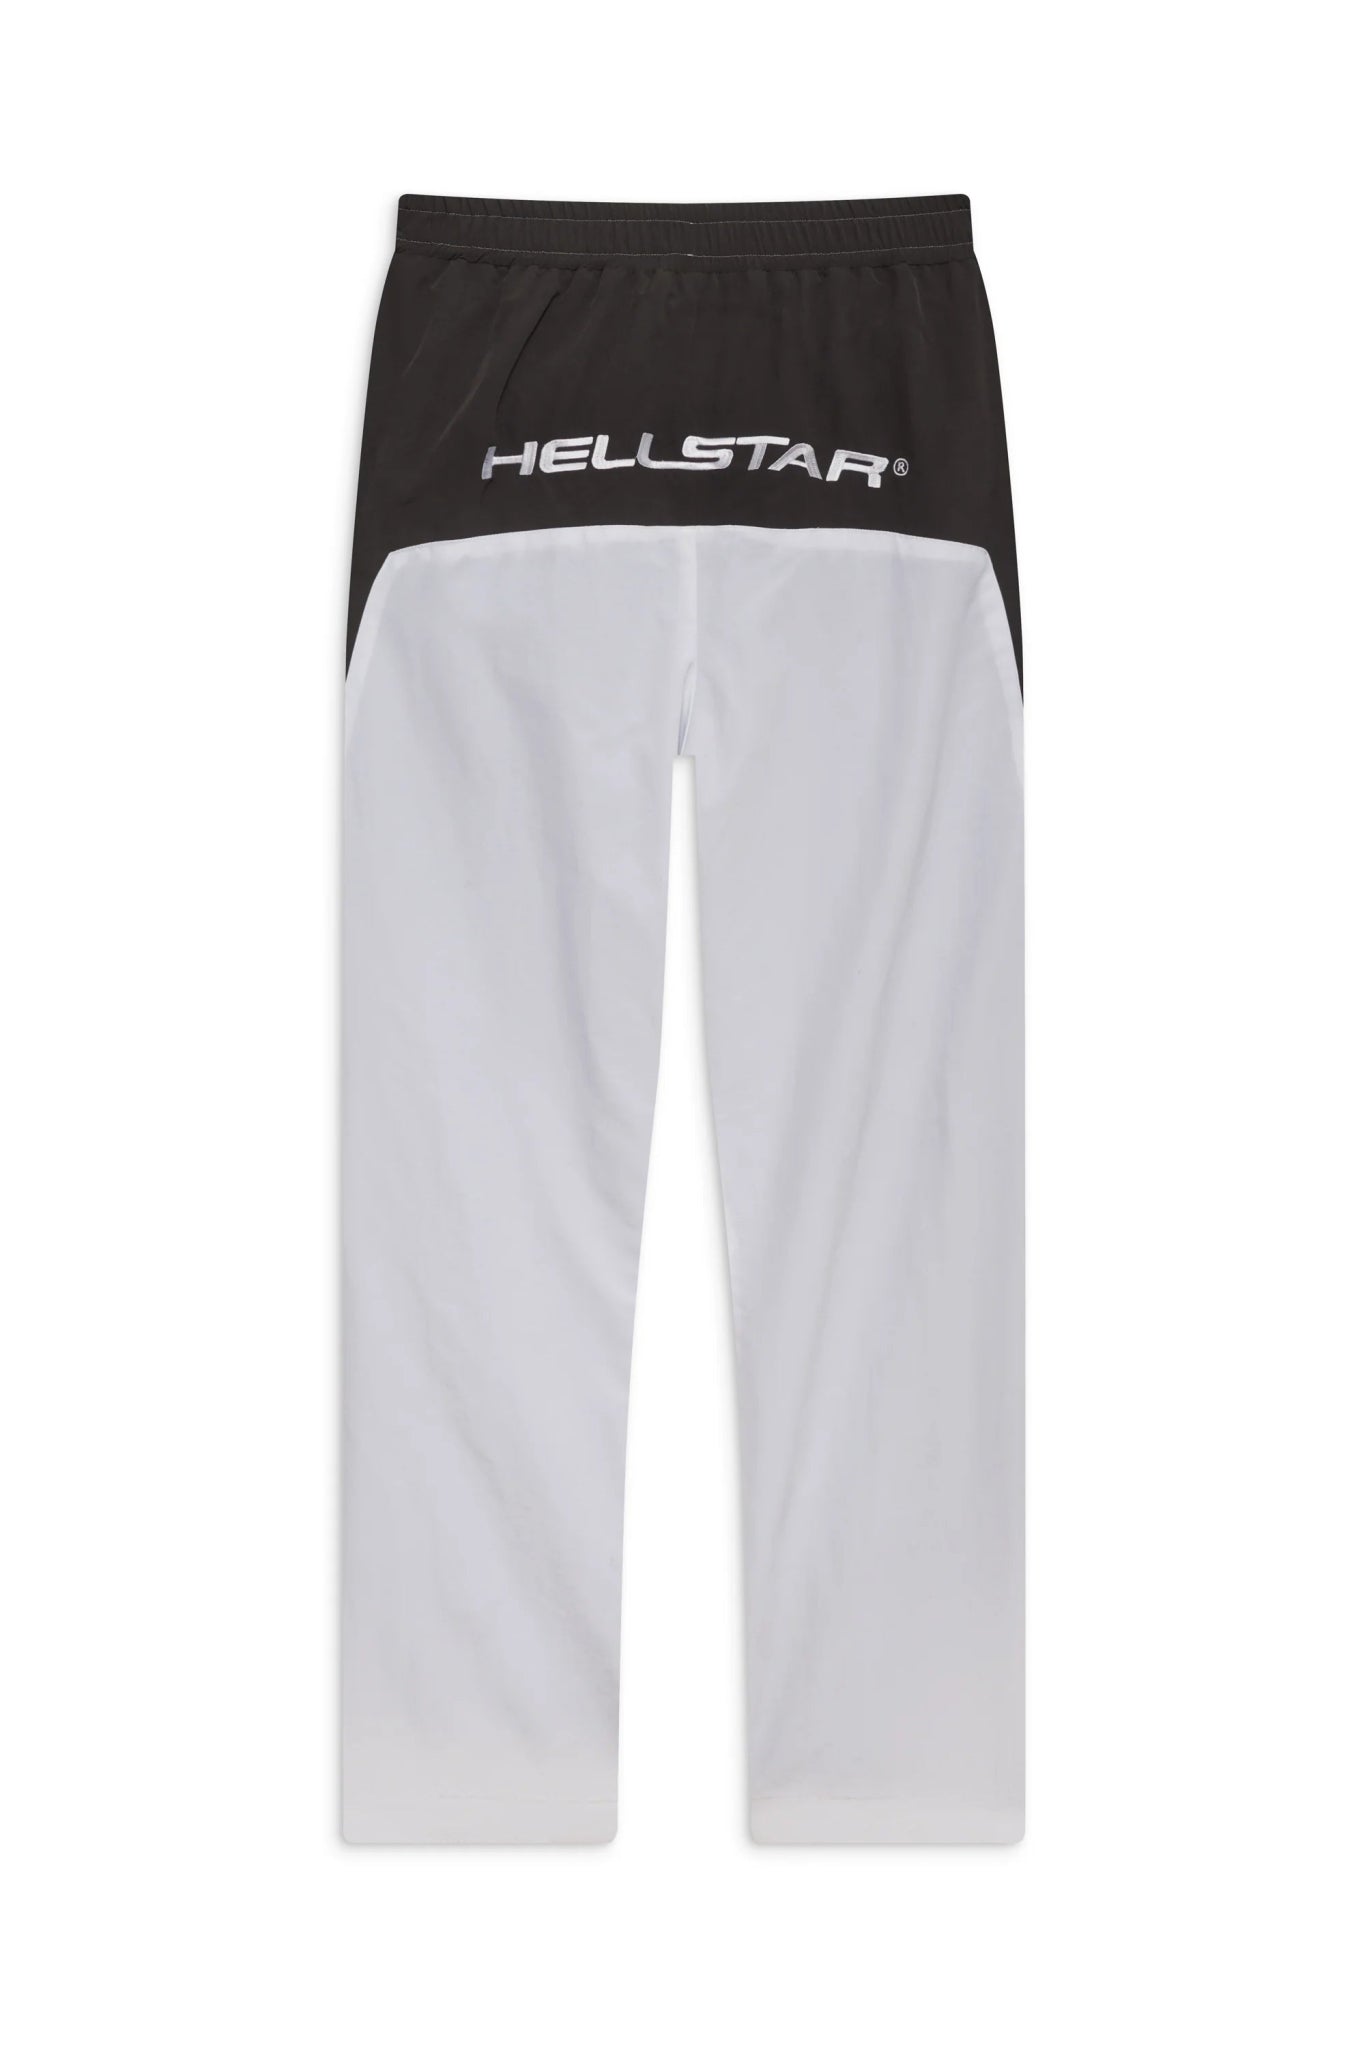 Hellstar Sports White Track Pants - Sneakersbe Sneakers Sale Online